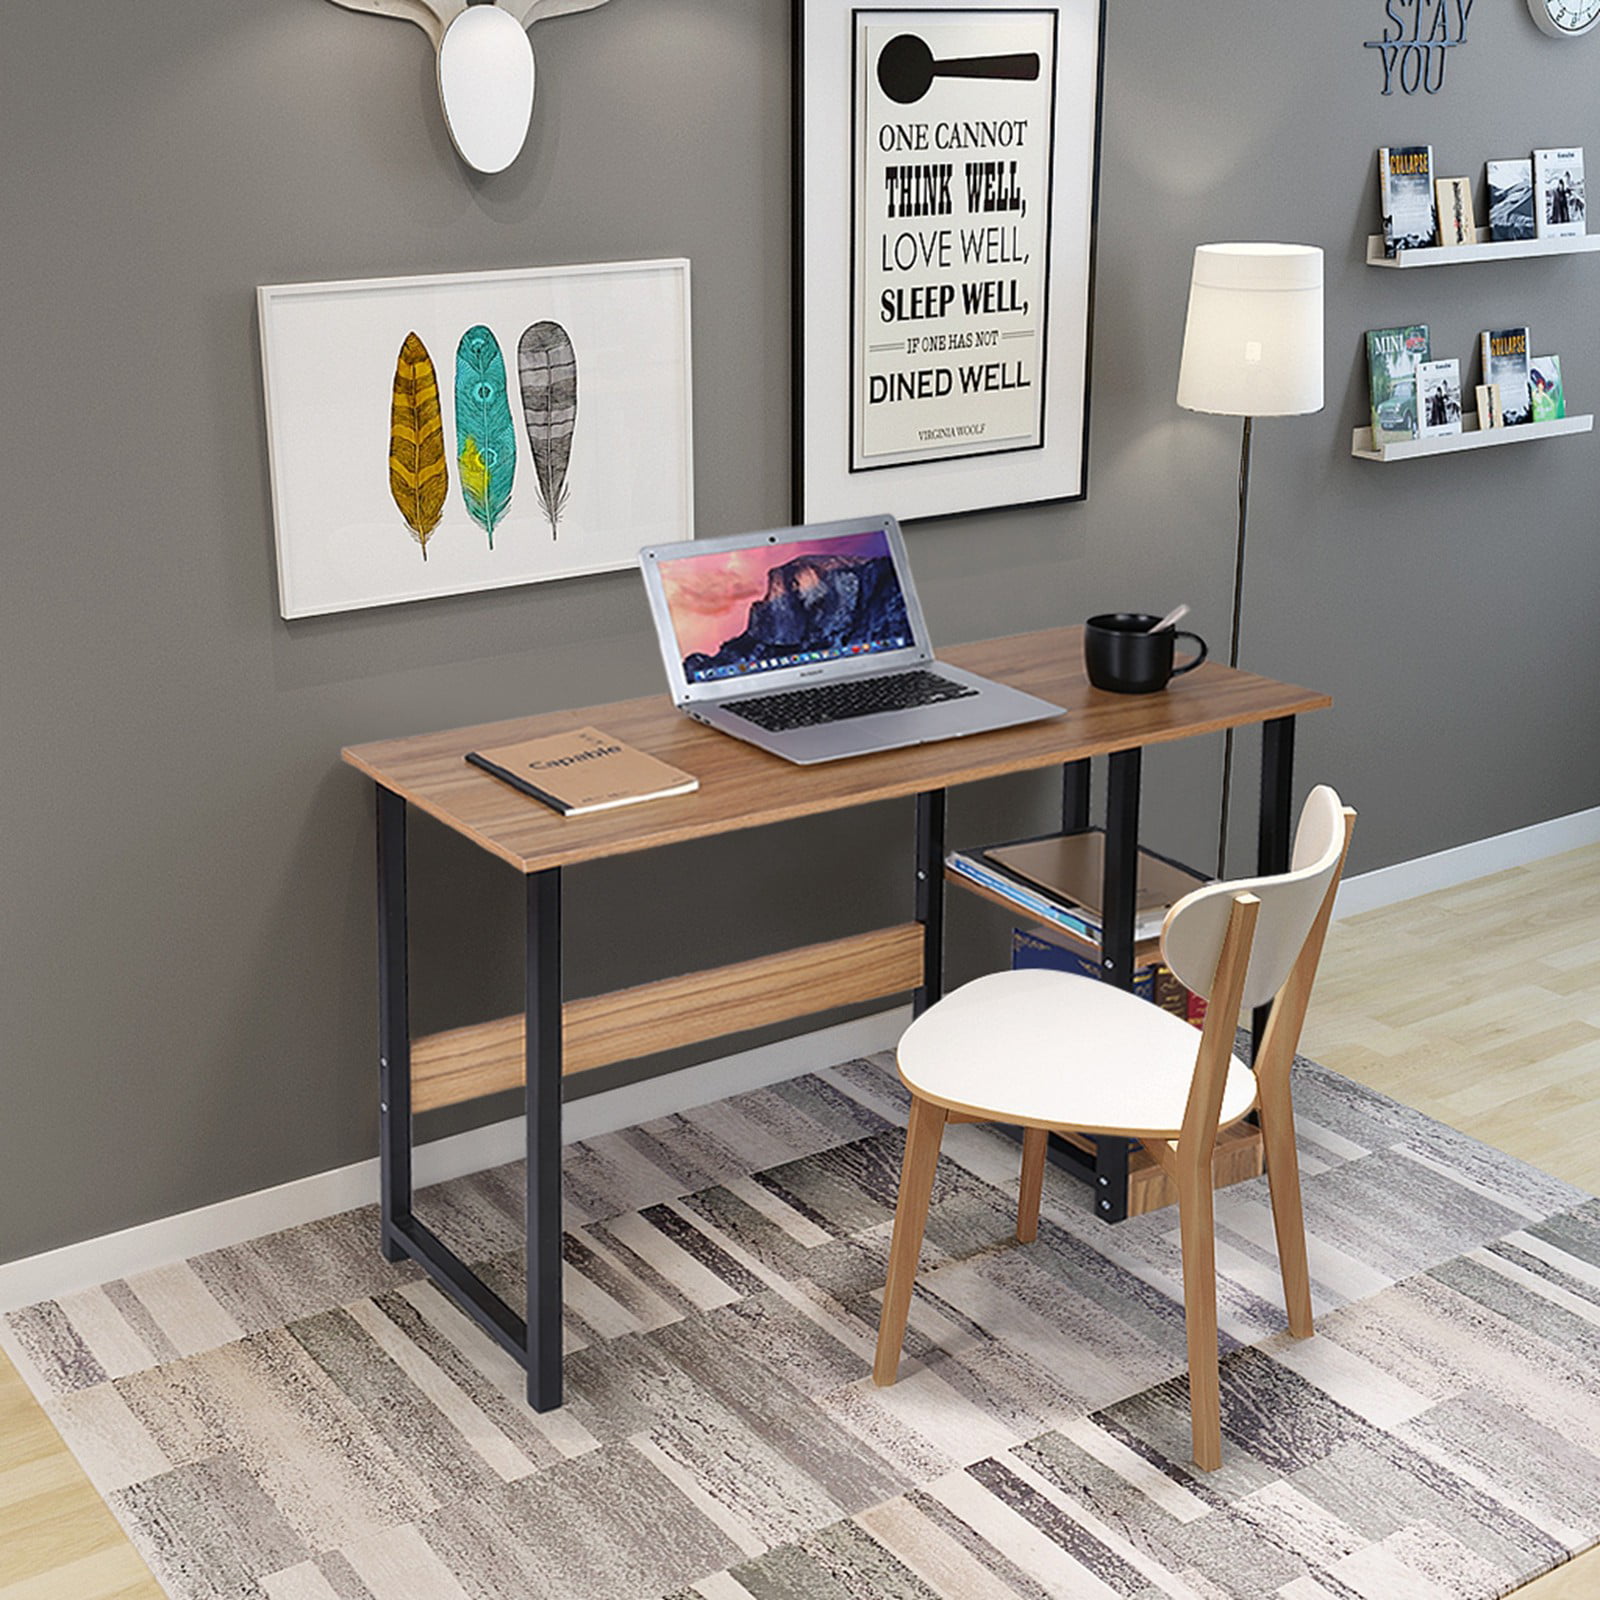 Details about   US Home Desktop Computer Desk Bedroom Laptop Study Table Office Desk Workstation 